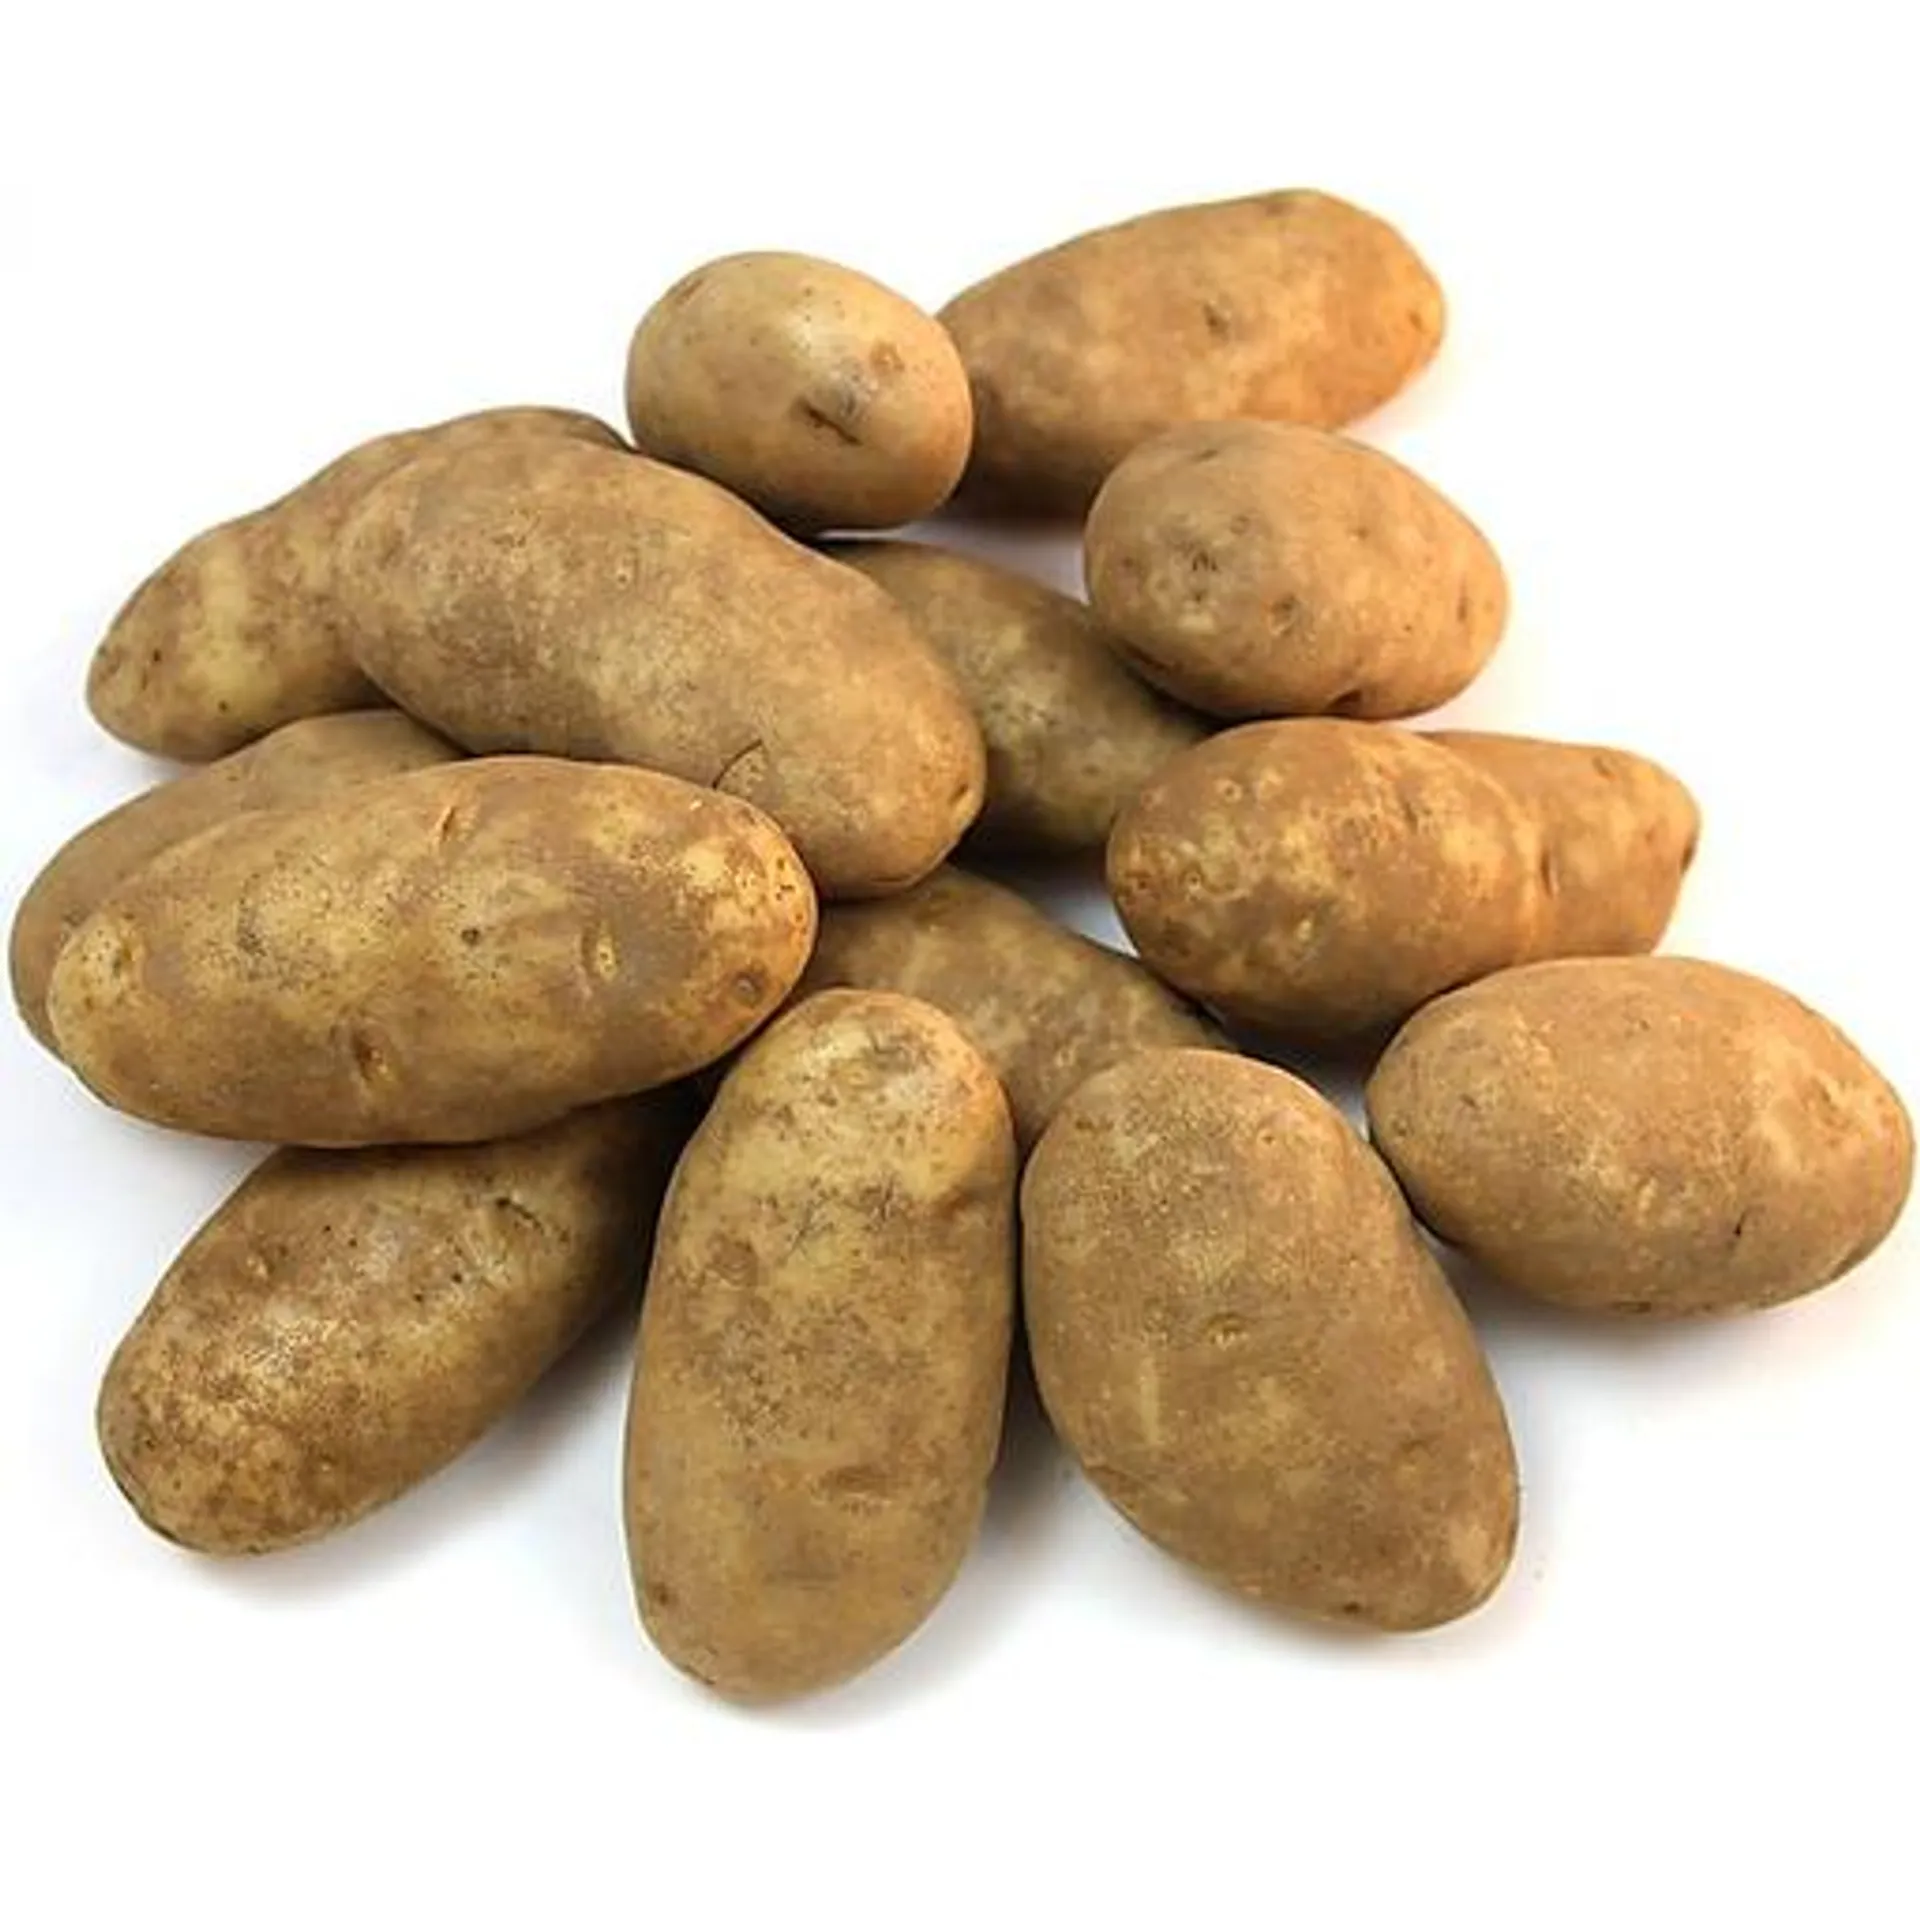 Russet Potatoes - 5 lb. Bag